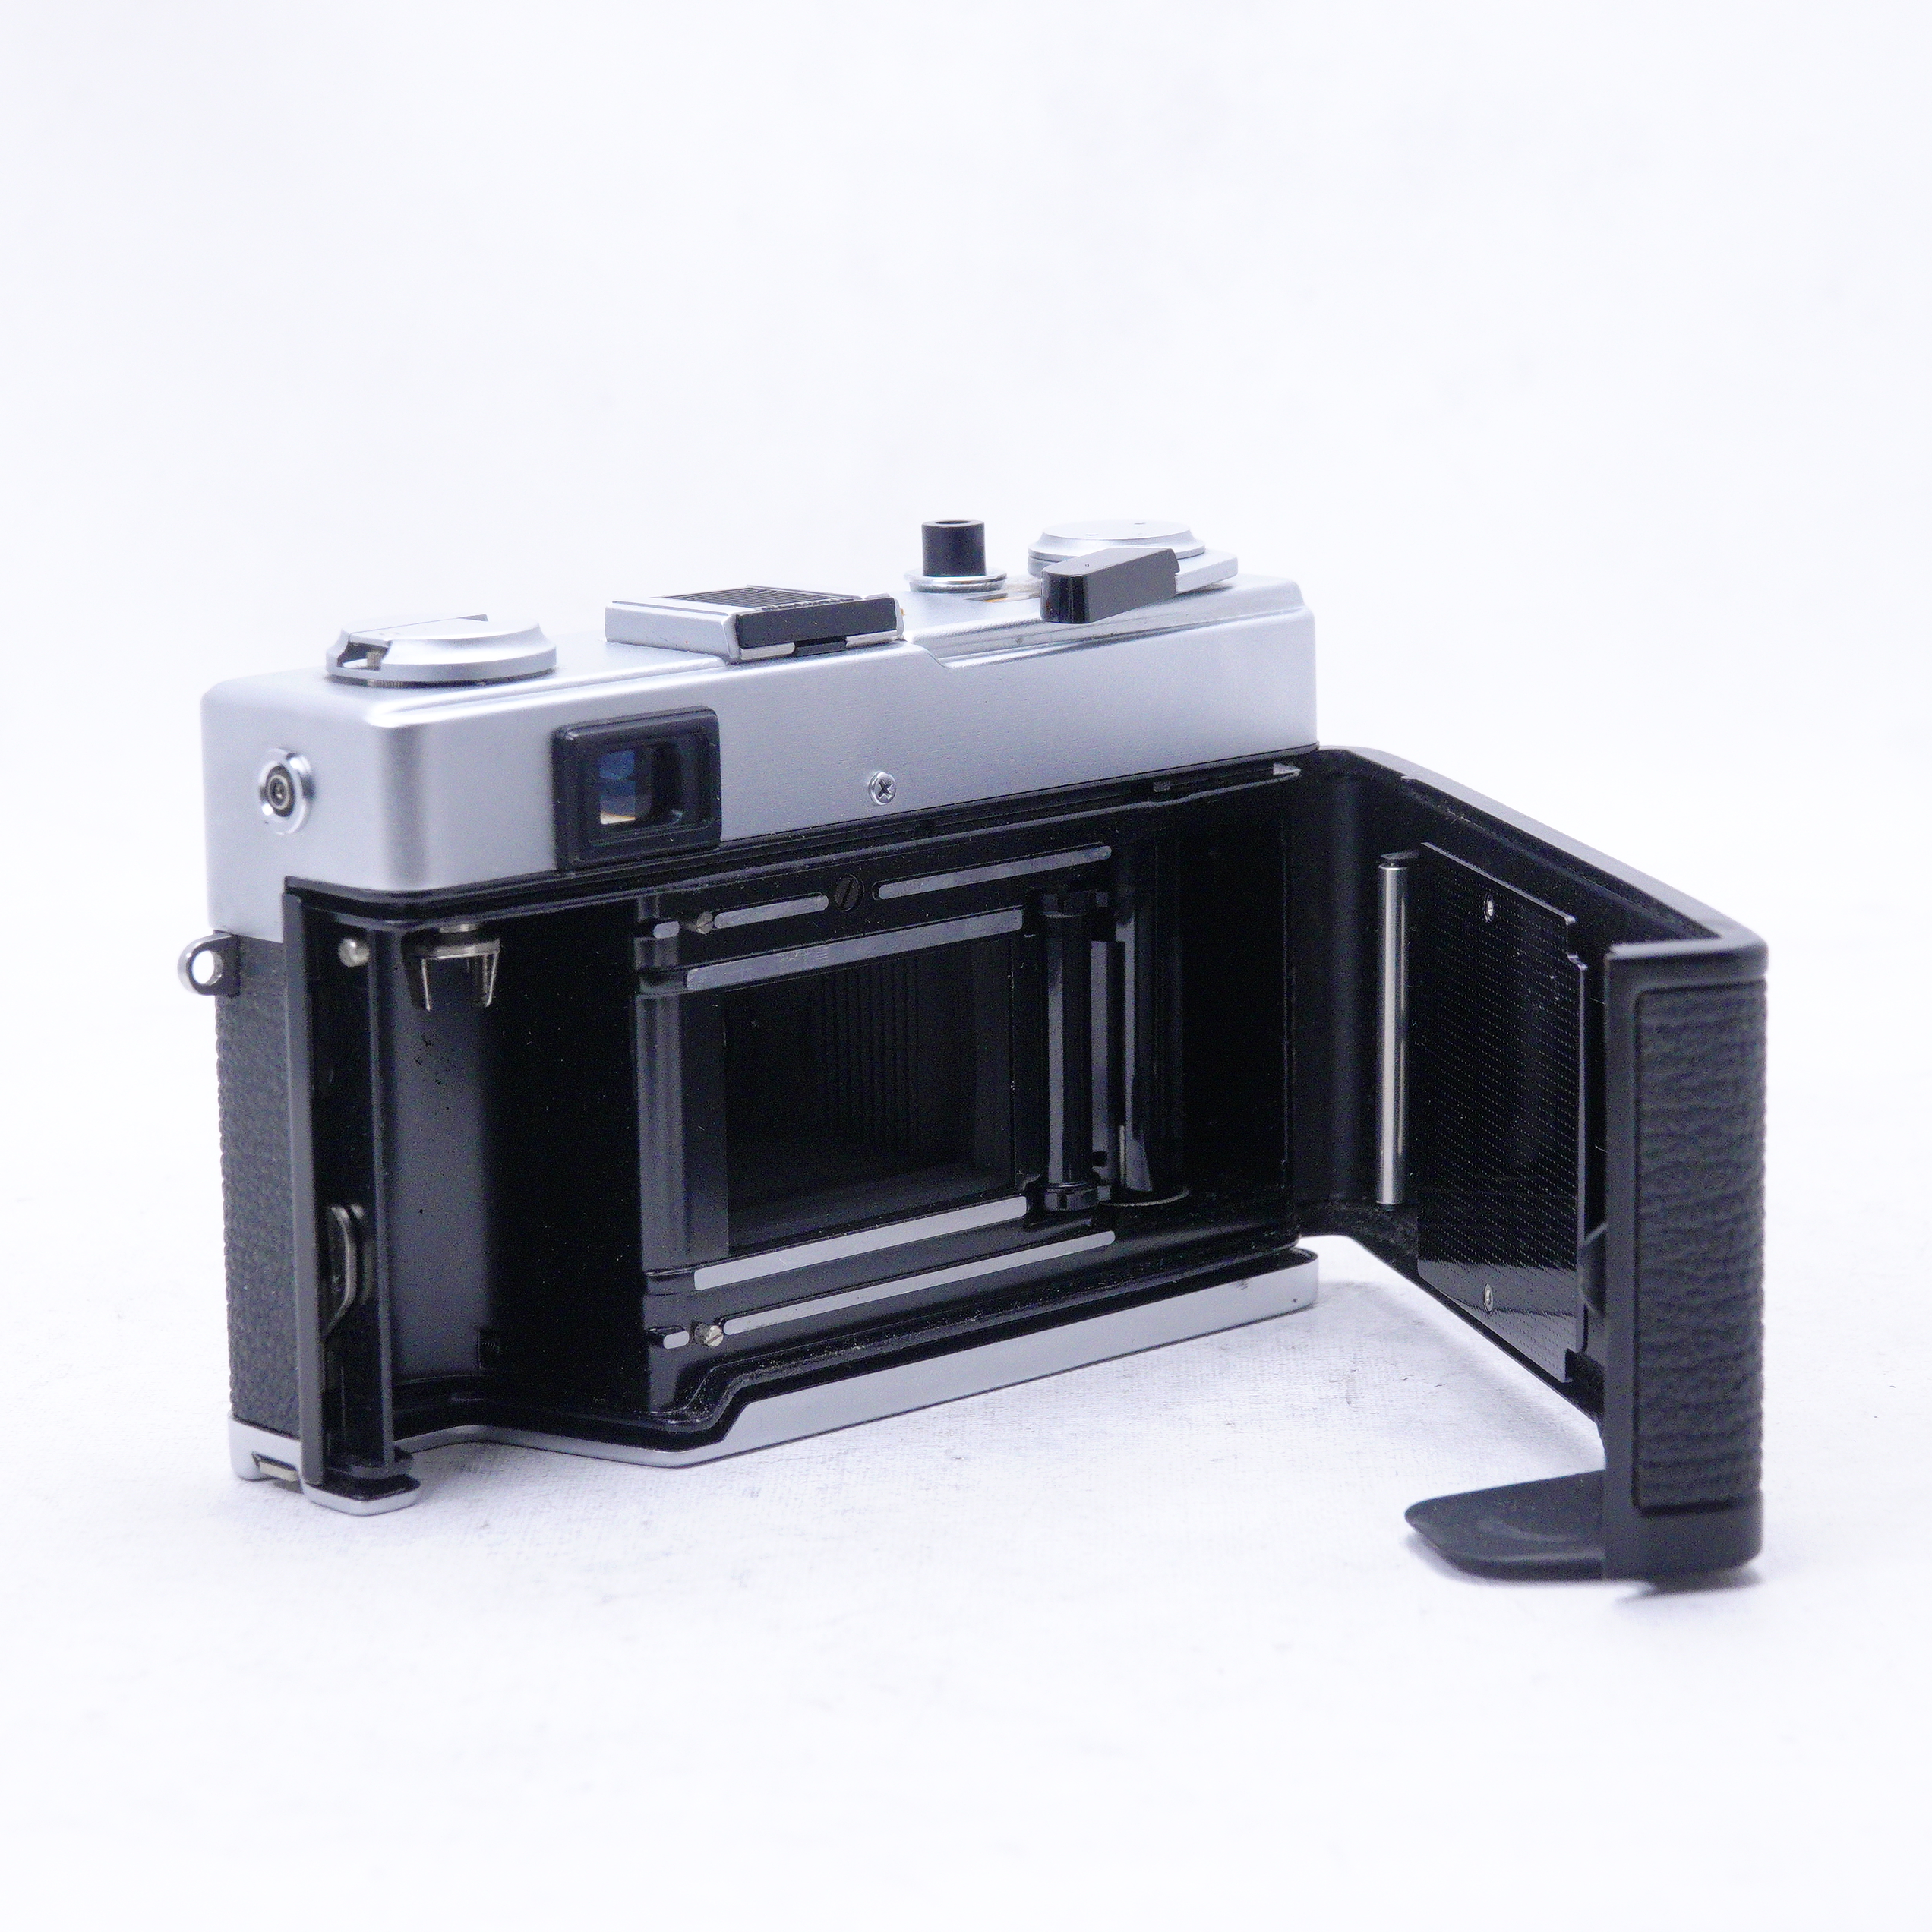 Olympus 35 ED Compact Film Rangefinder - Usado